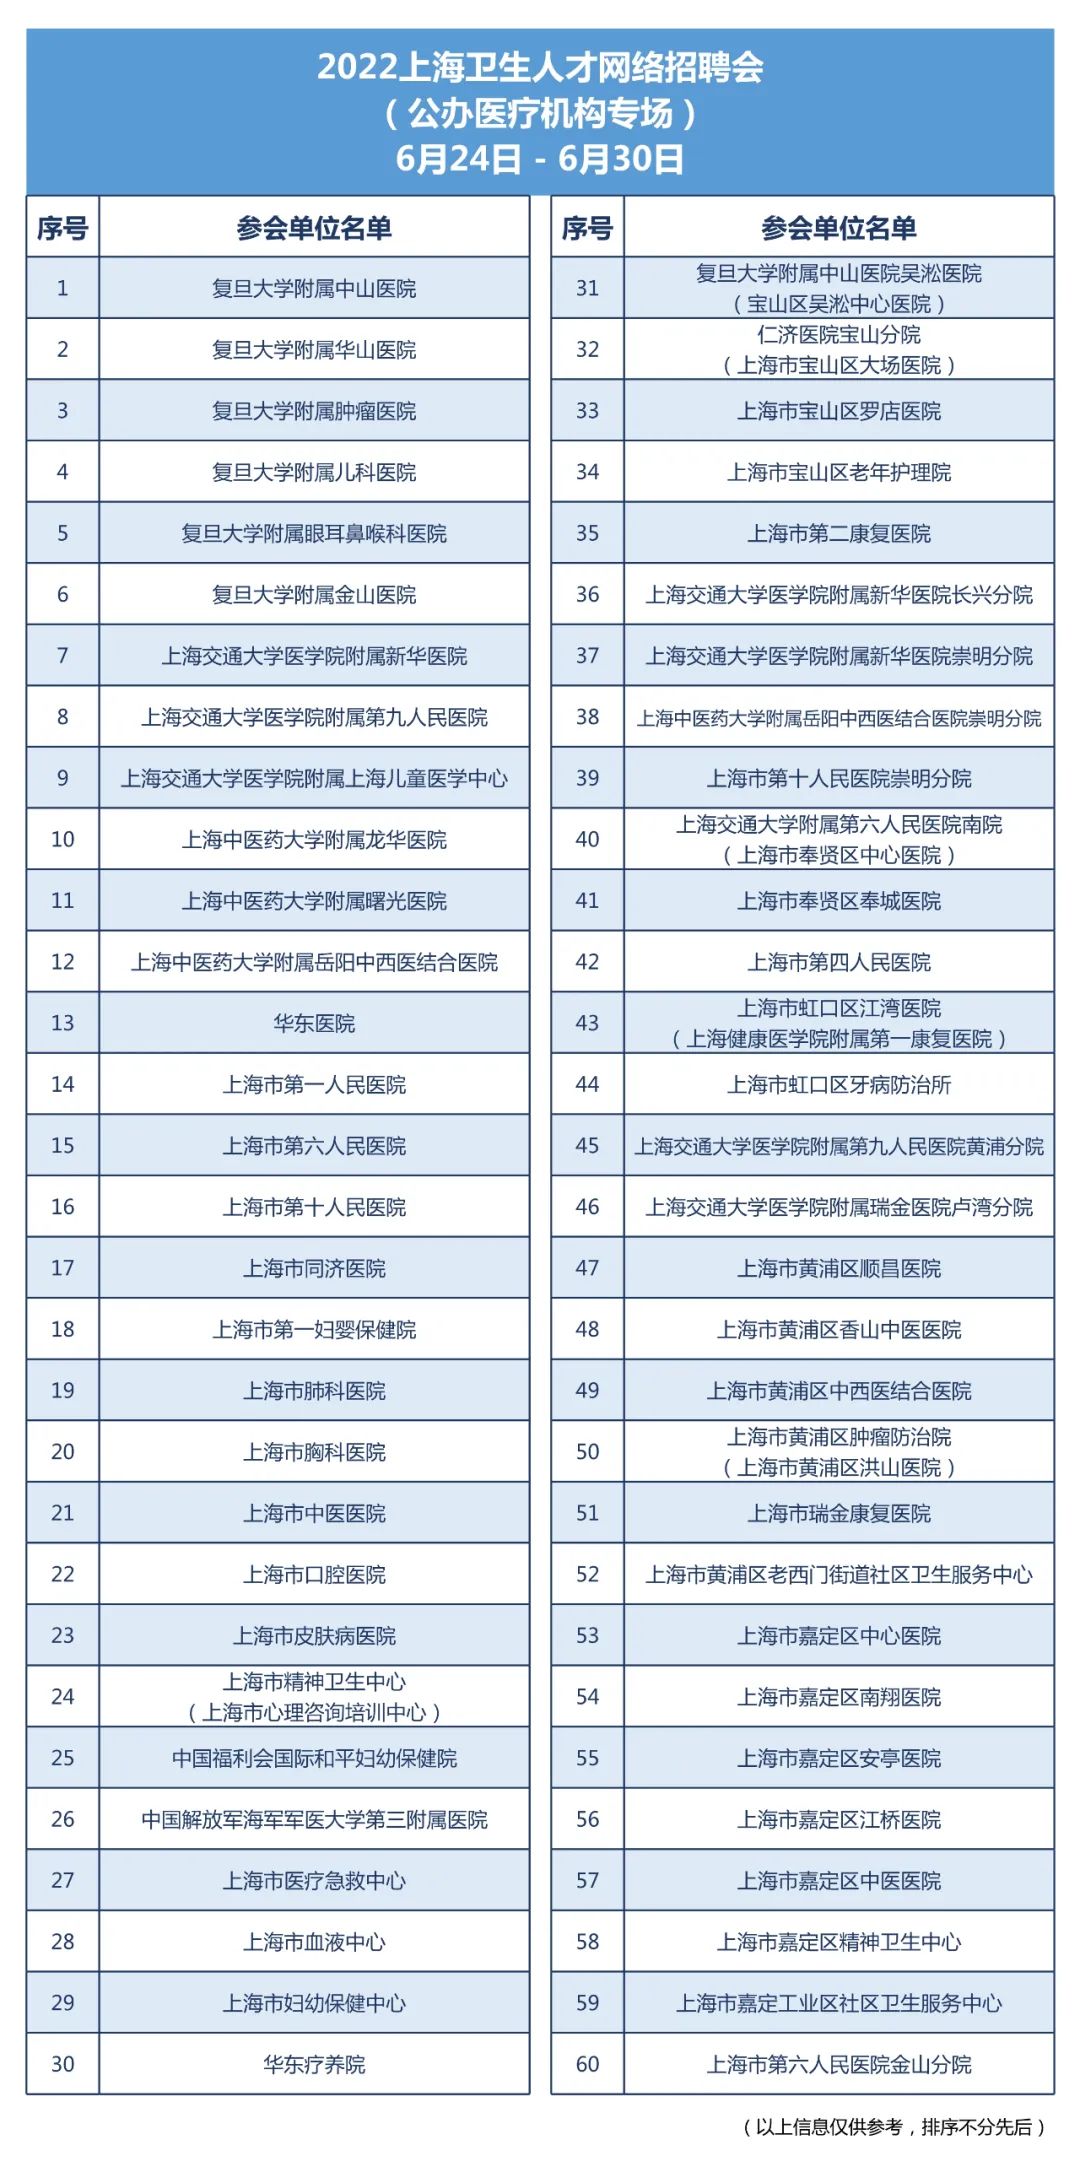 【就业】2022上海卫生人才网络招聘会将于6月24-30日举办插图2